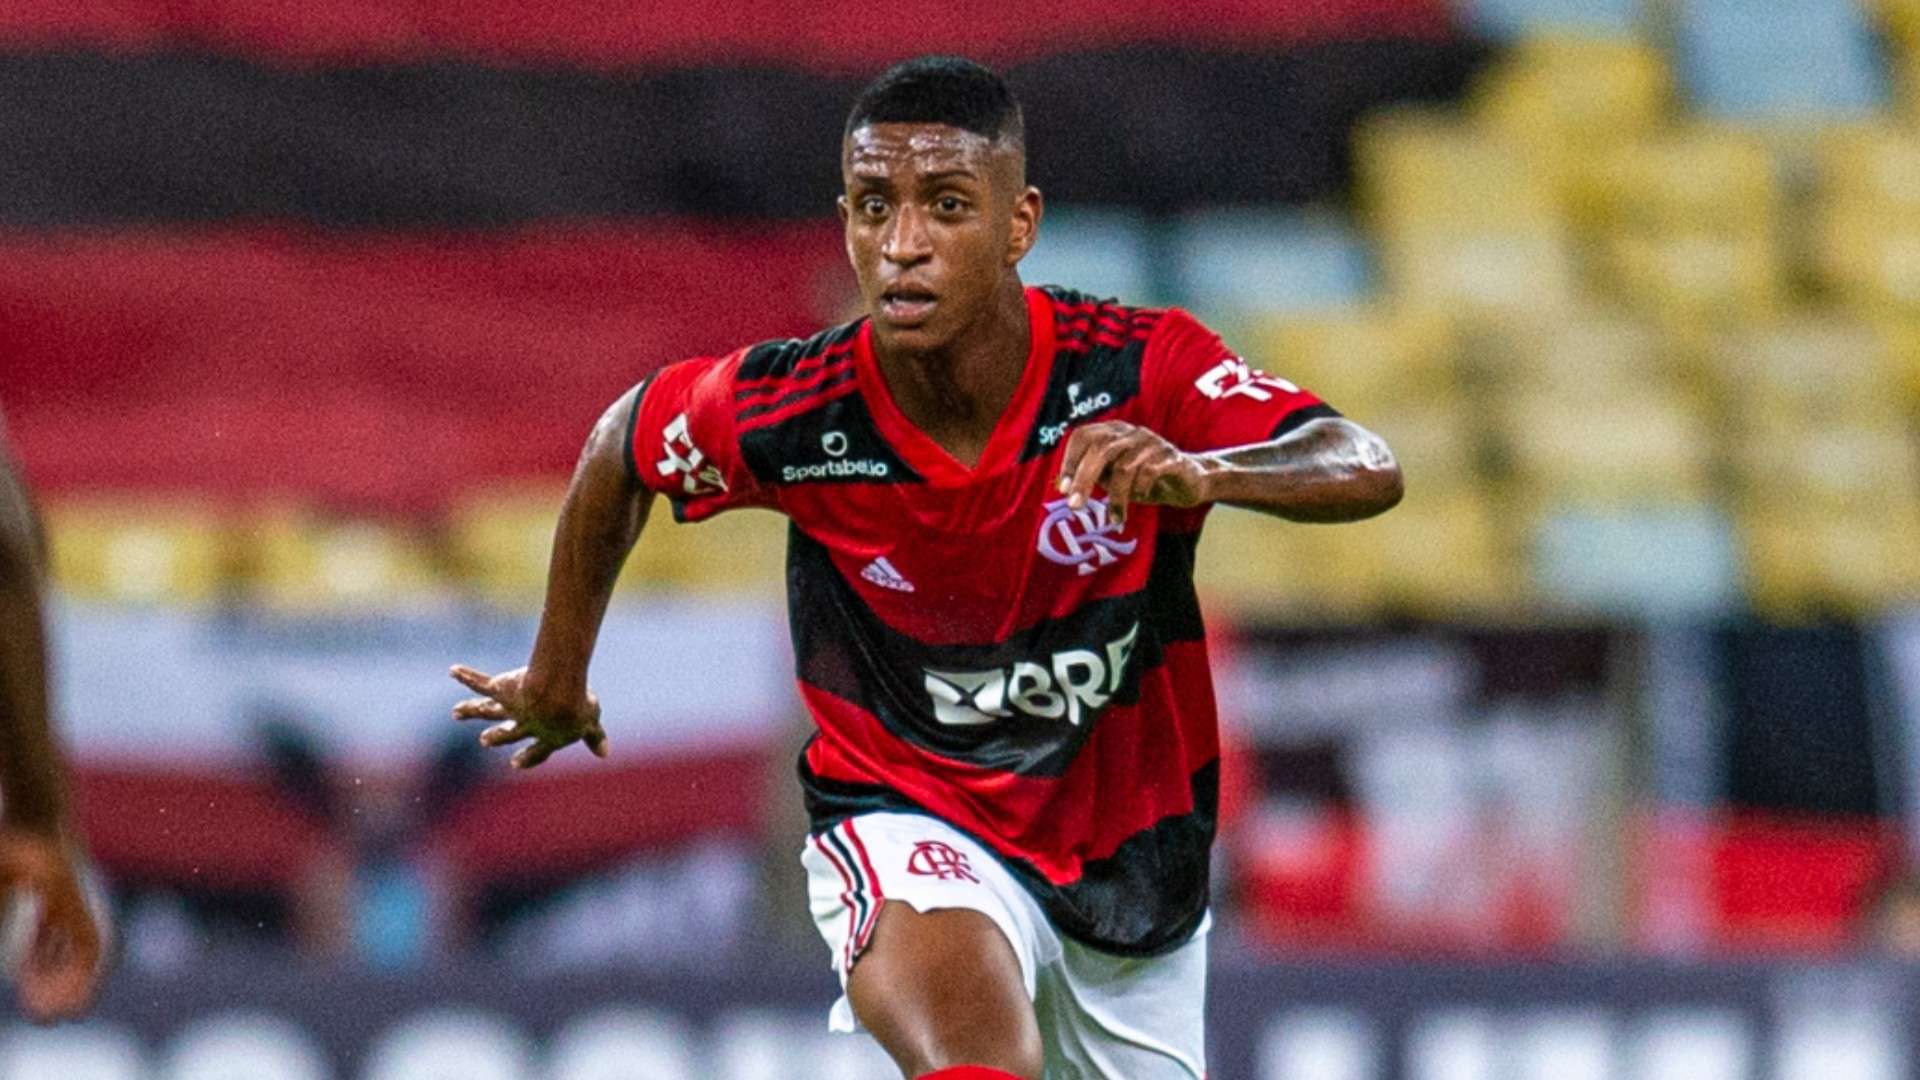 Max Flamengo Nova Iguaçu Carioca 02 03 2021